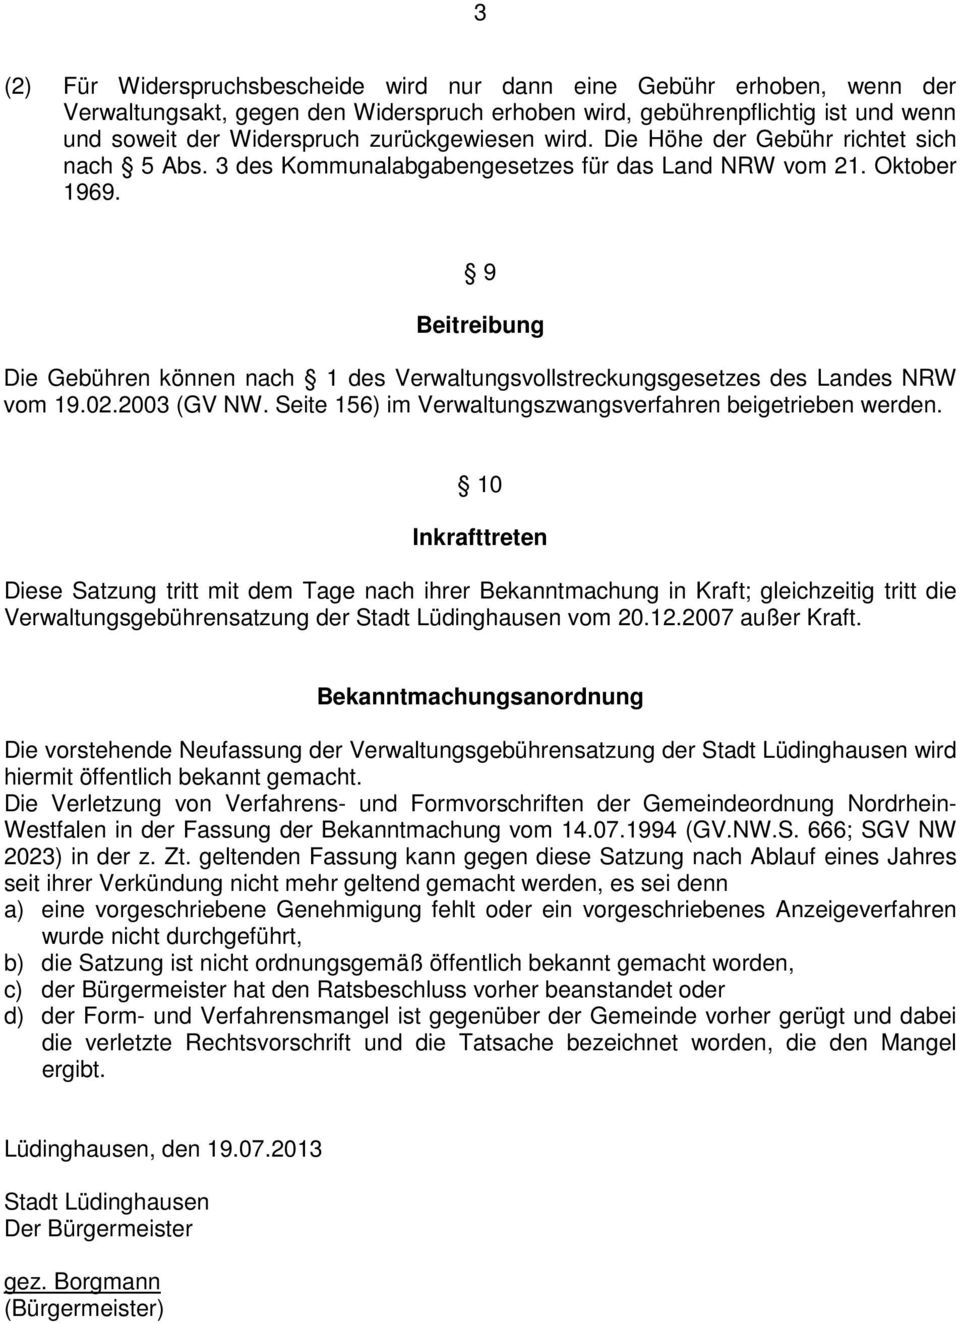 9 Beitreibung Die Gebühren können nach 1 des Verwaltungsvollstreckungsgesetzes des Landes NRW vom 19.02.2003 (GV NW. Seite 156) im Verwaltungszwangsverfahren beigetrieben werden.